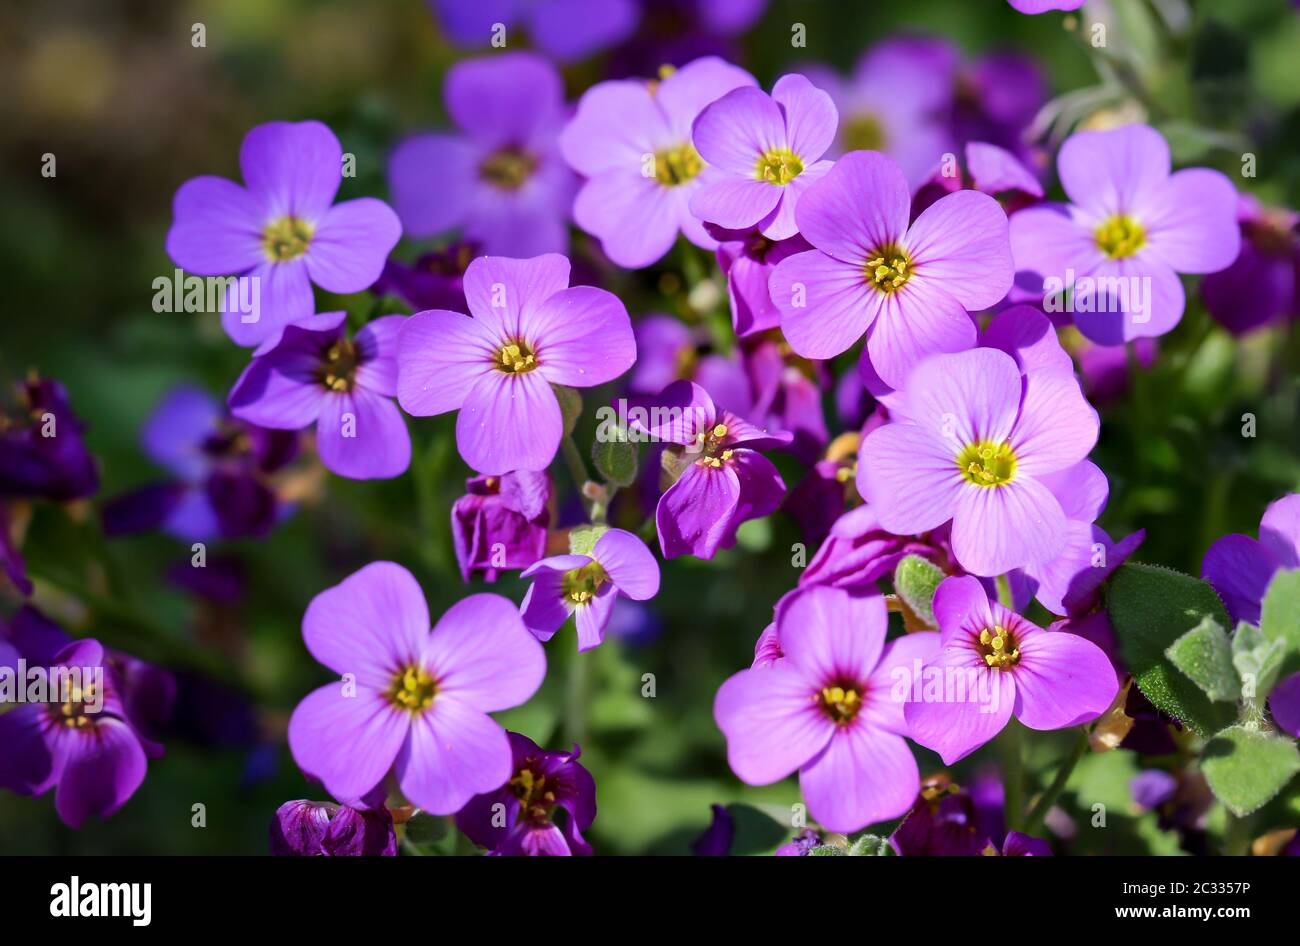 gros plan d'une très belle fleur violette Photo Stock - Alamy